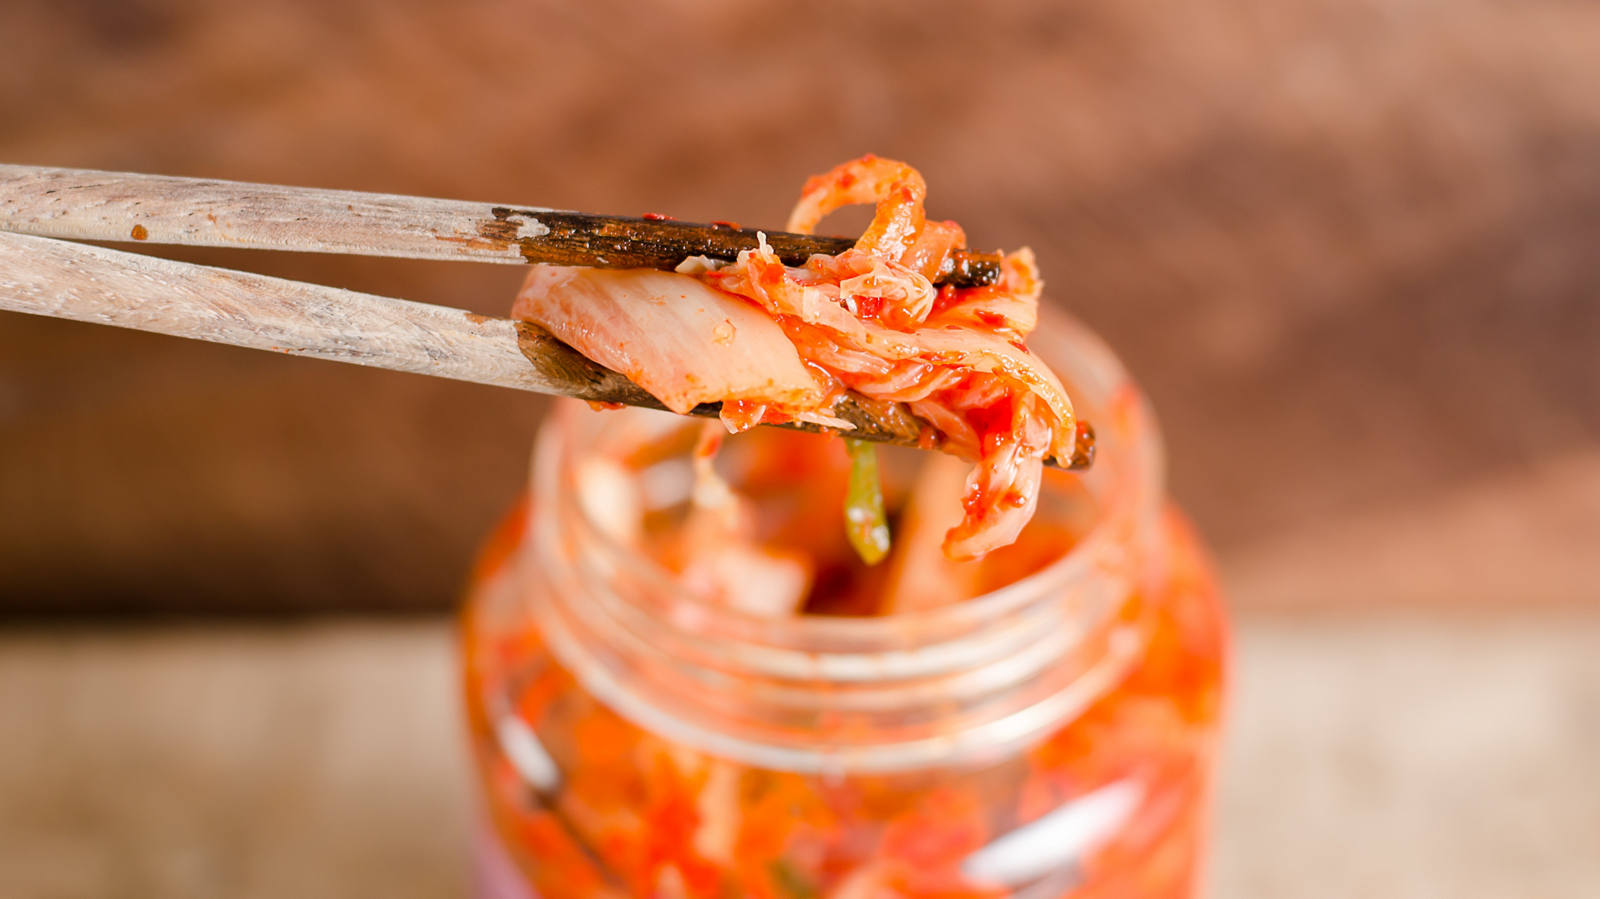 Ricetta del kimchi: fermentazione molto facile